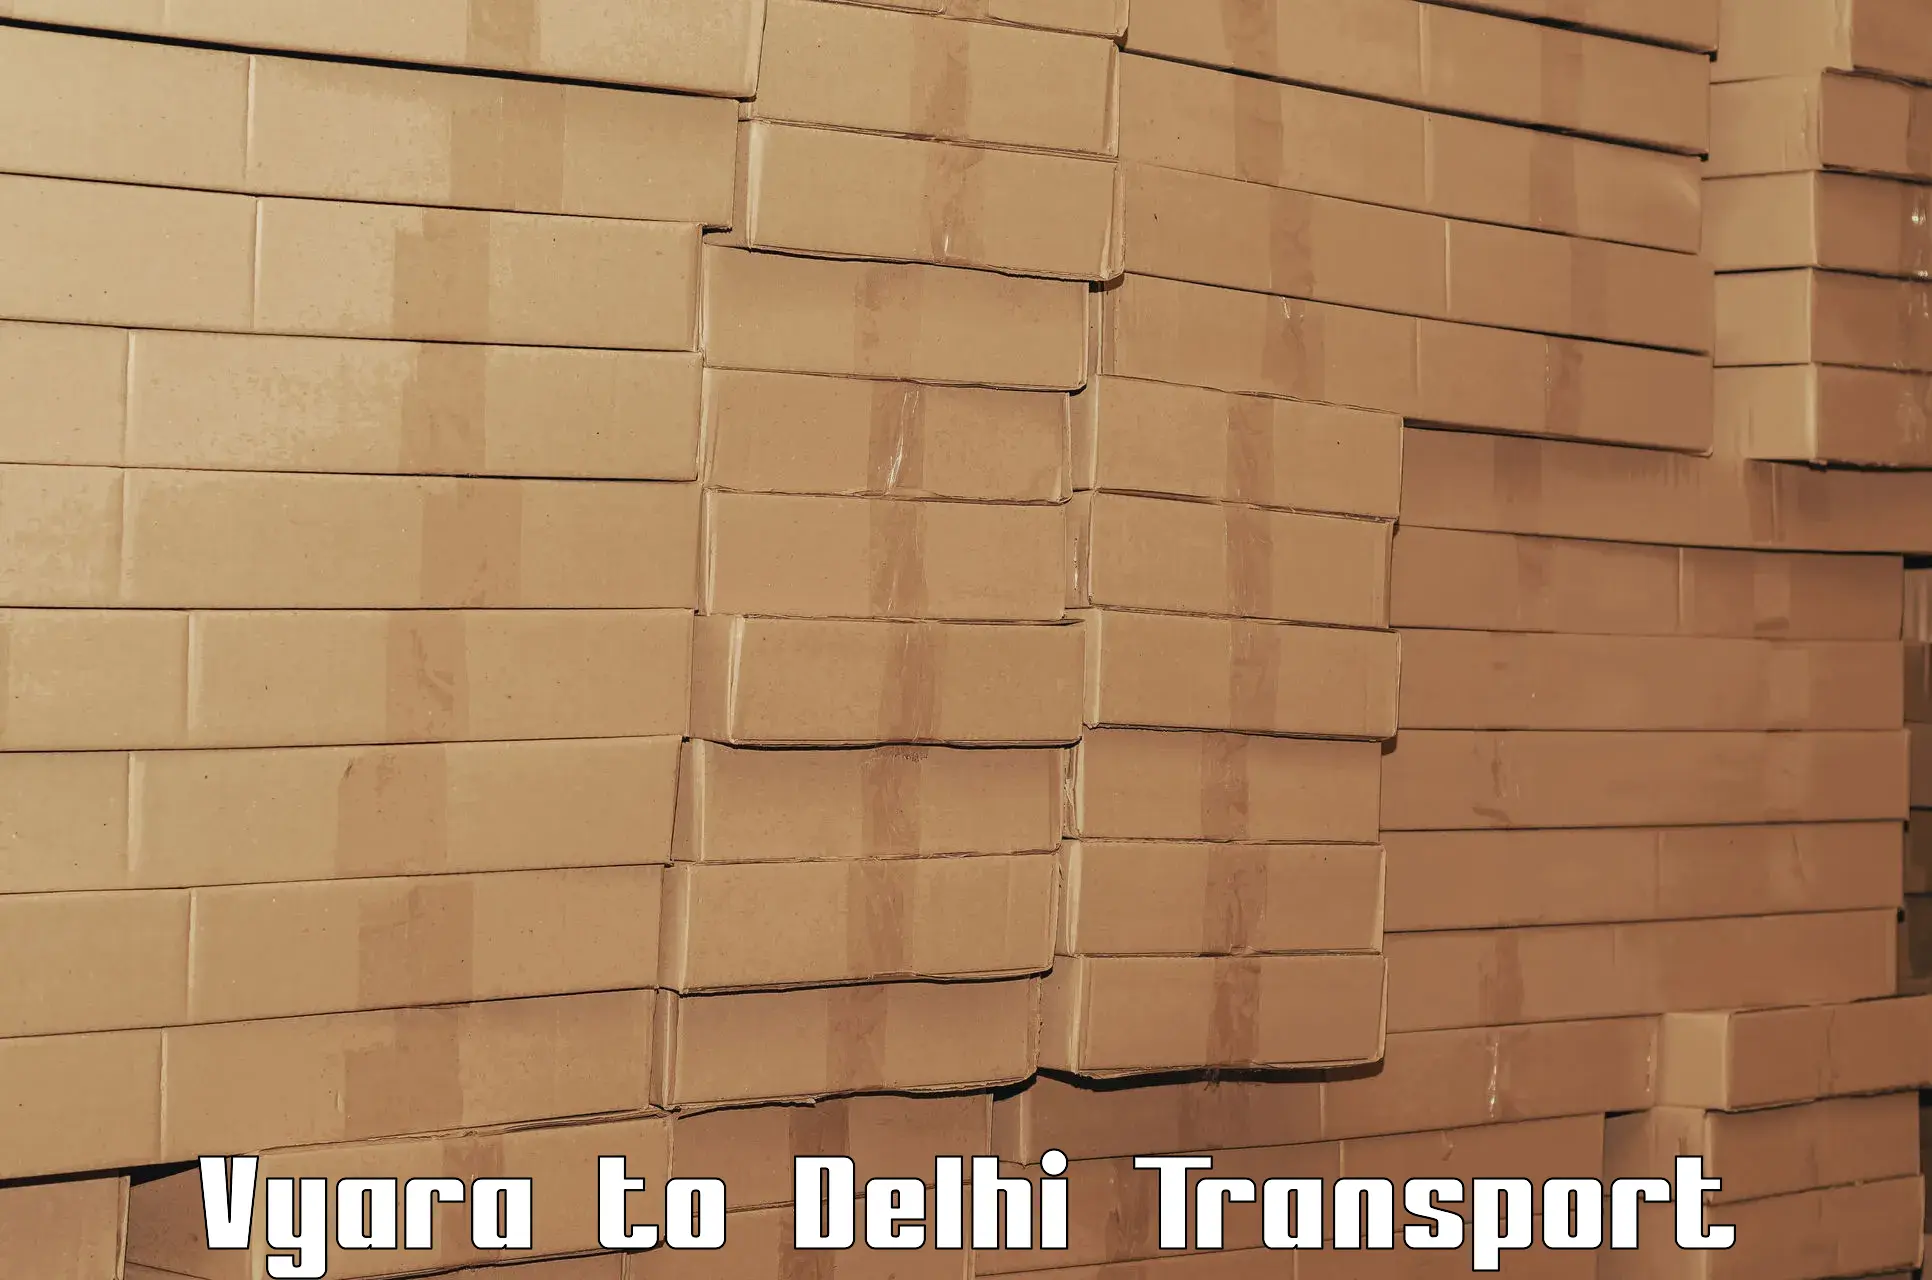 Logistics transportation services in Vyara to Jamia Millia Islamia New Delhi